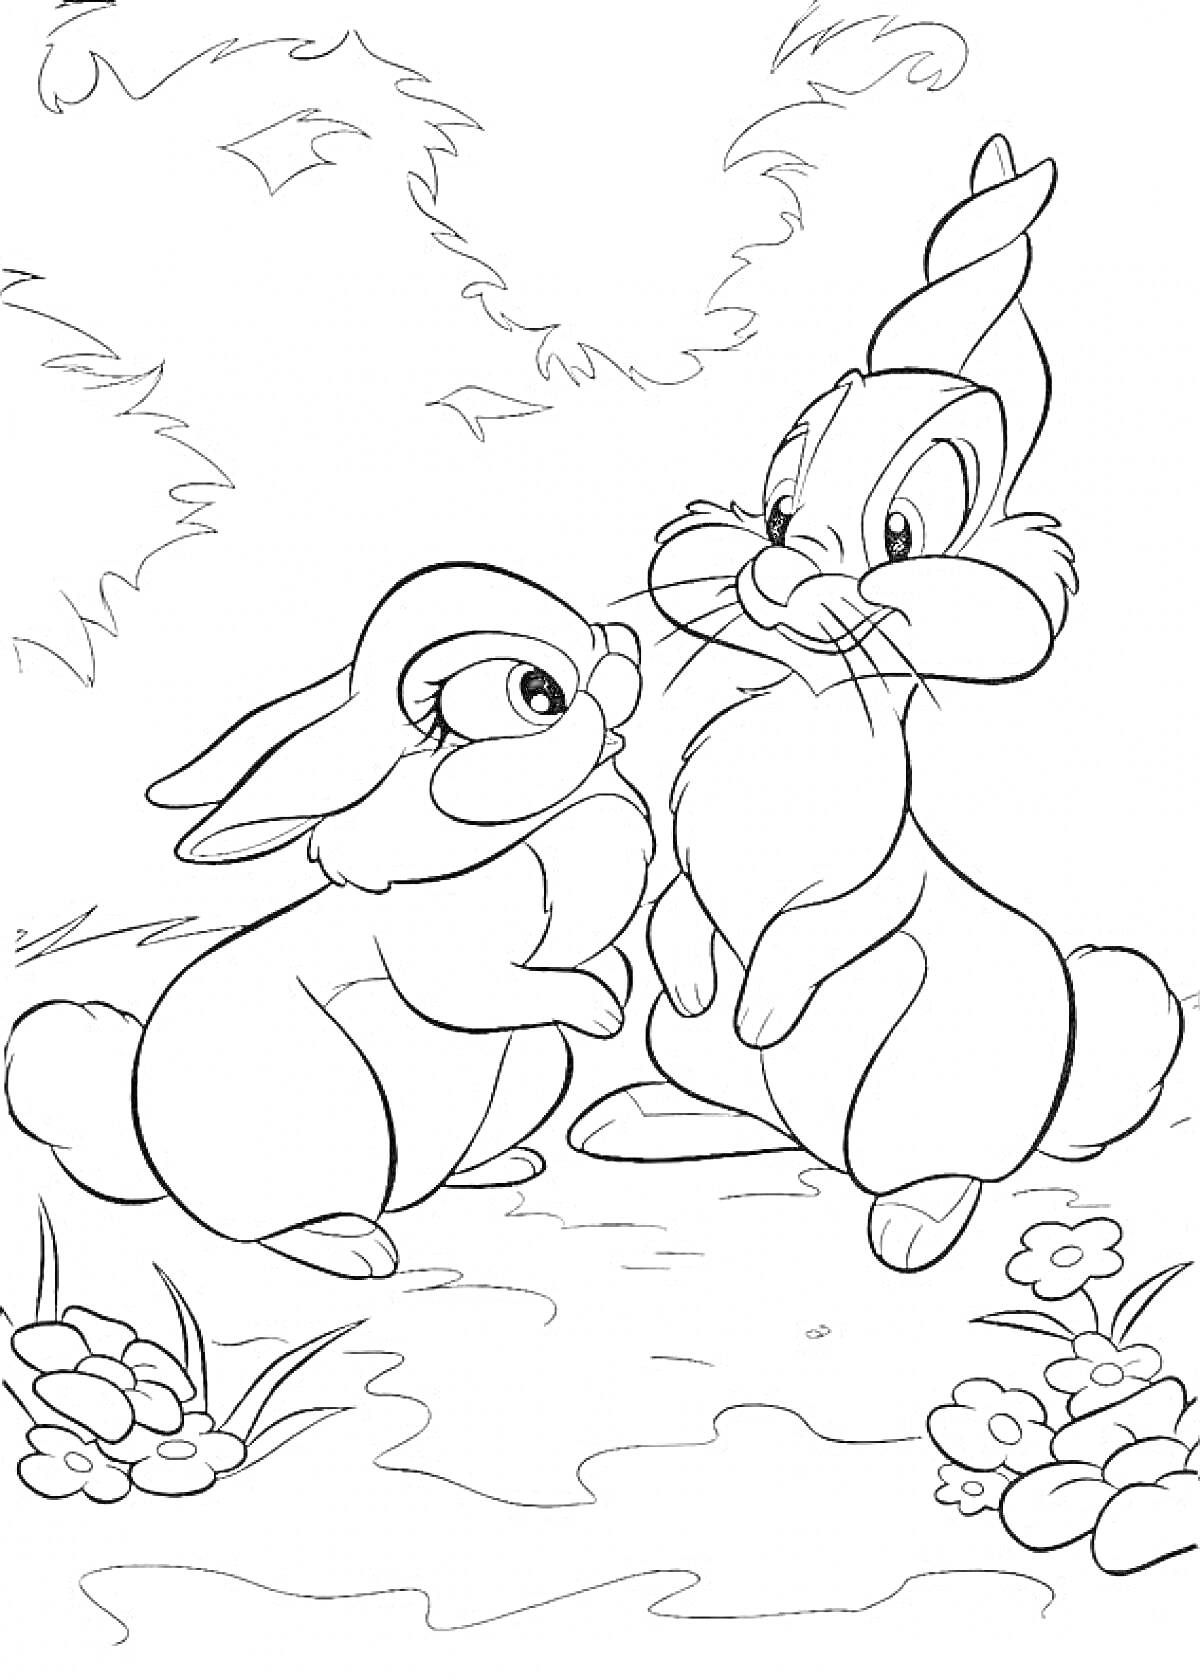 два кролика на лесной полянке с цветами и листьями